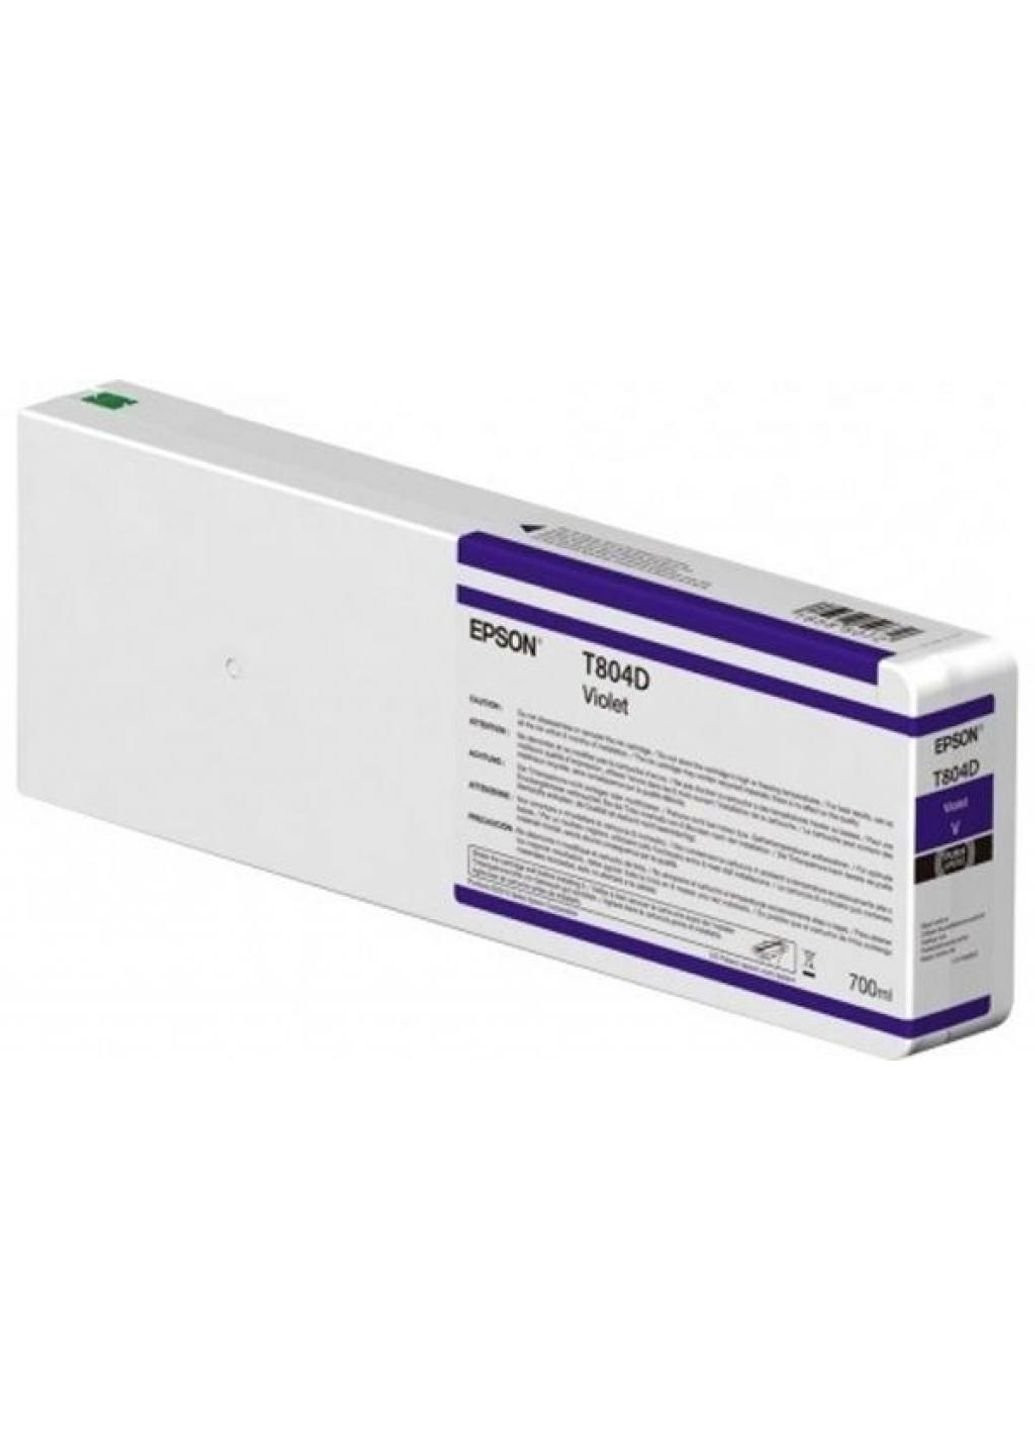 Картридж (C13T804D00) Epson sc-p6000/p7000/p8000/p9000 violet 700мл (247614580)